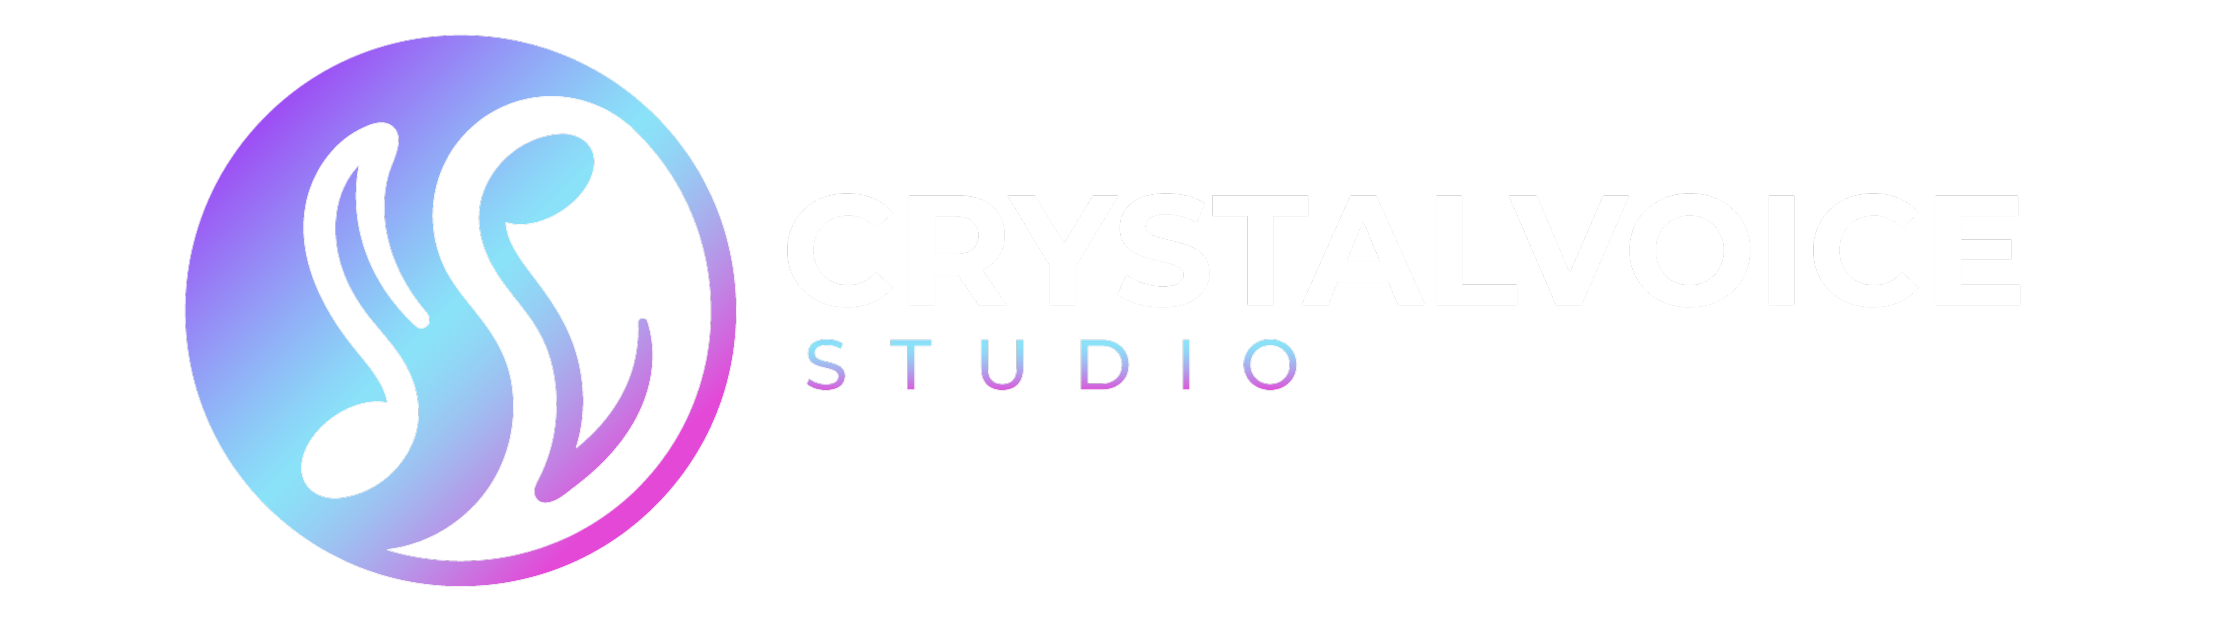 CrystalVoice Studio